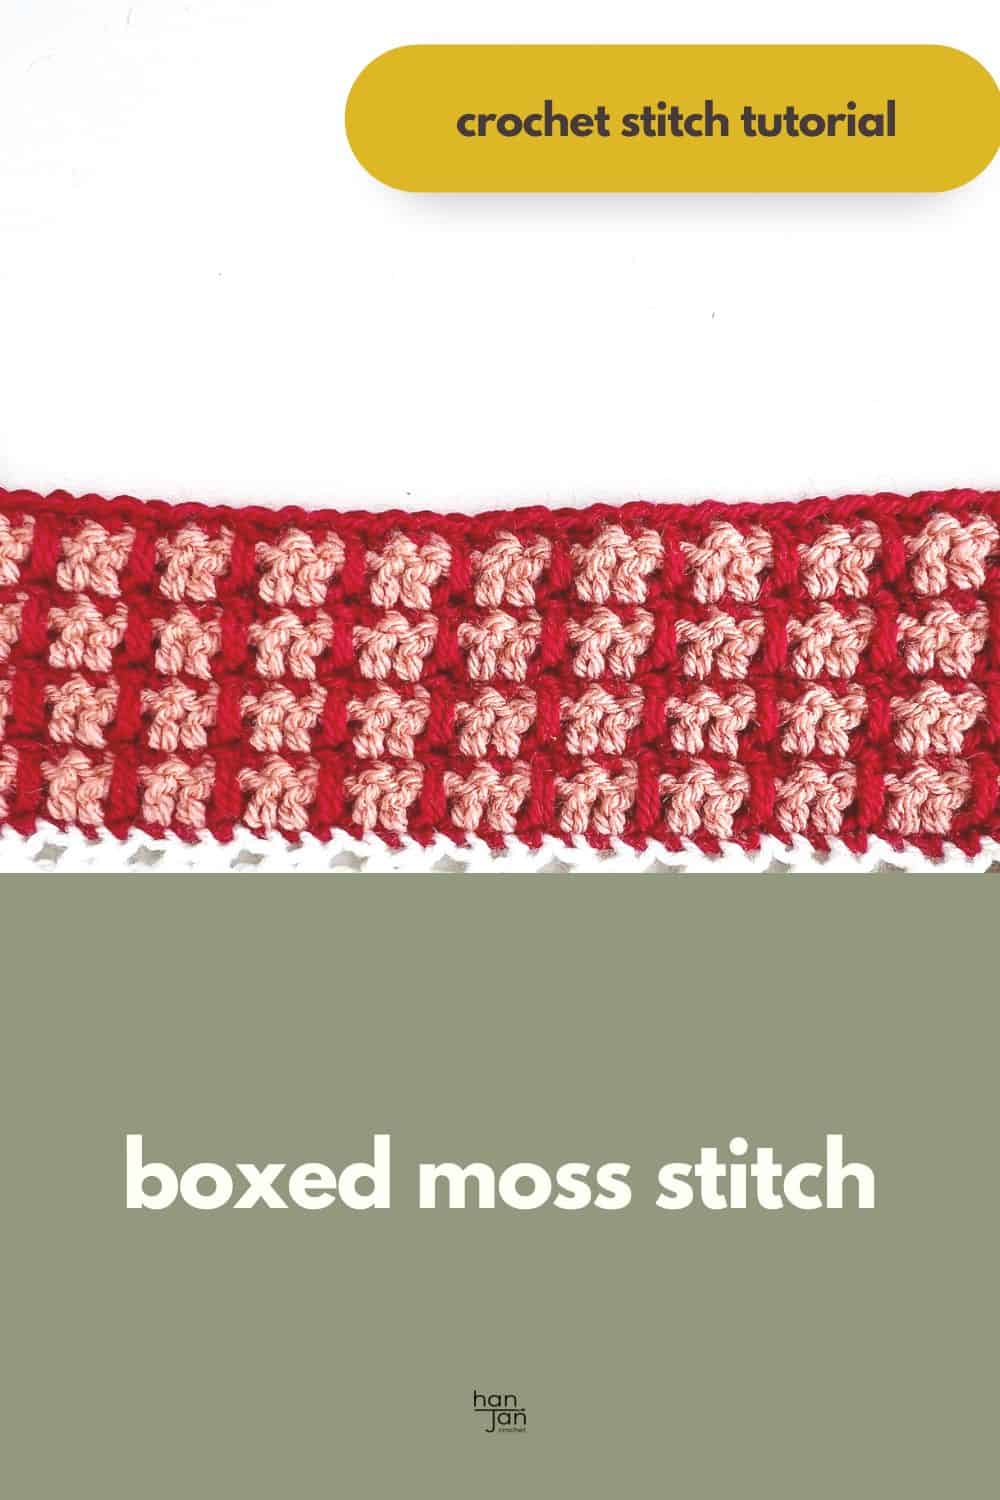 Boxed moss stitch pattern.